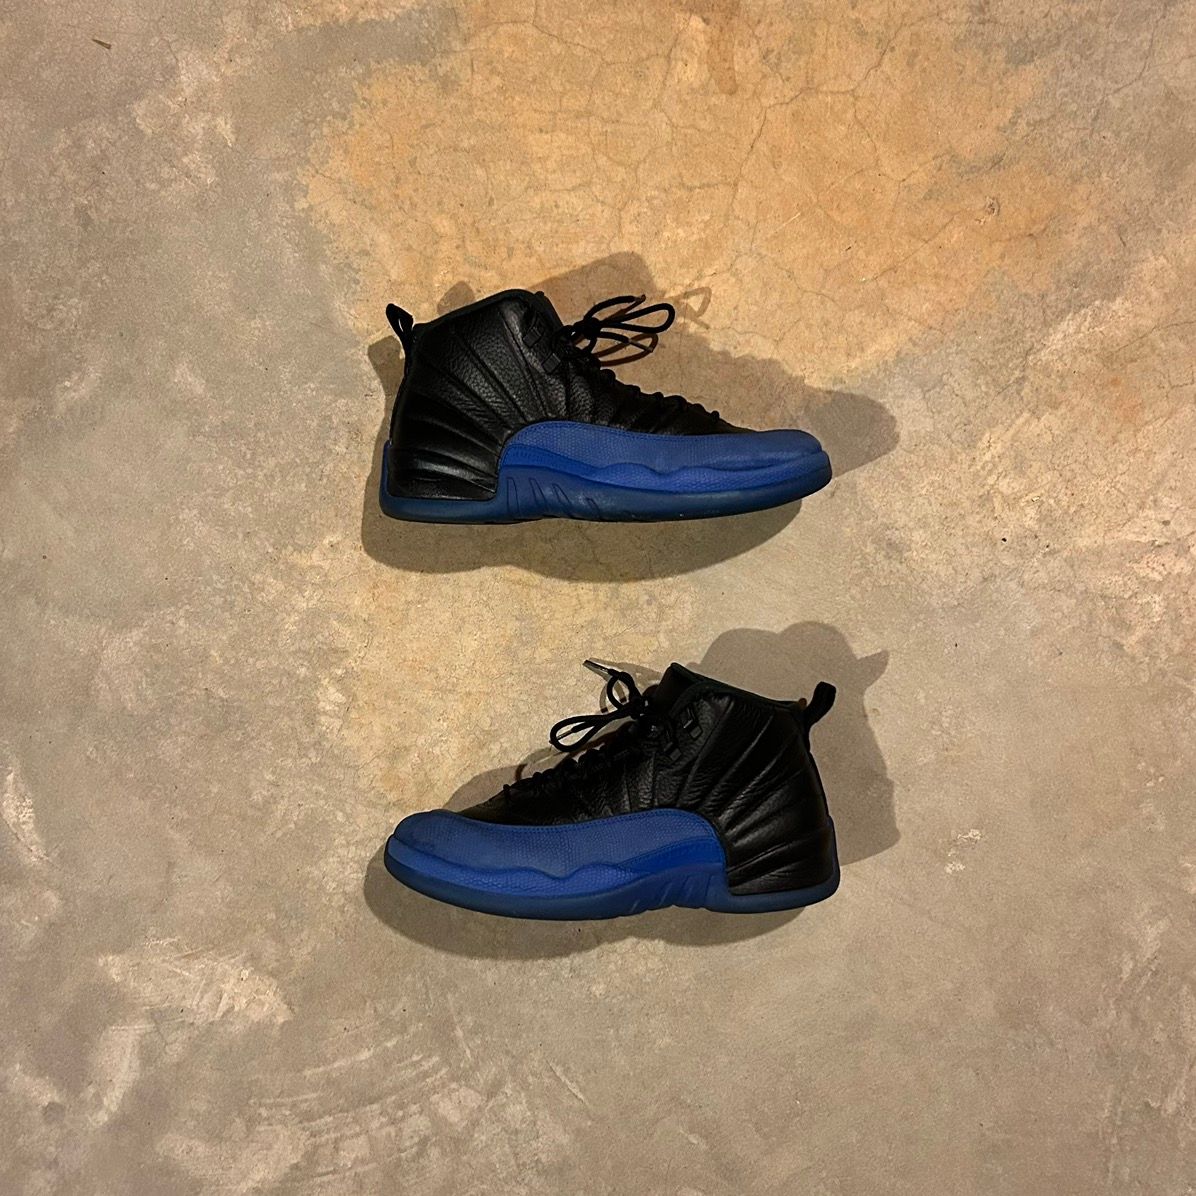 Pre-owned Jordan Nike Air Jordan 12 Retro Black Game Royal 2019 Us 10.5 Shoes In Blue